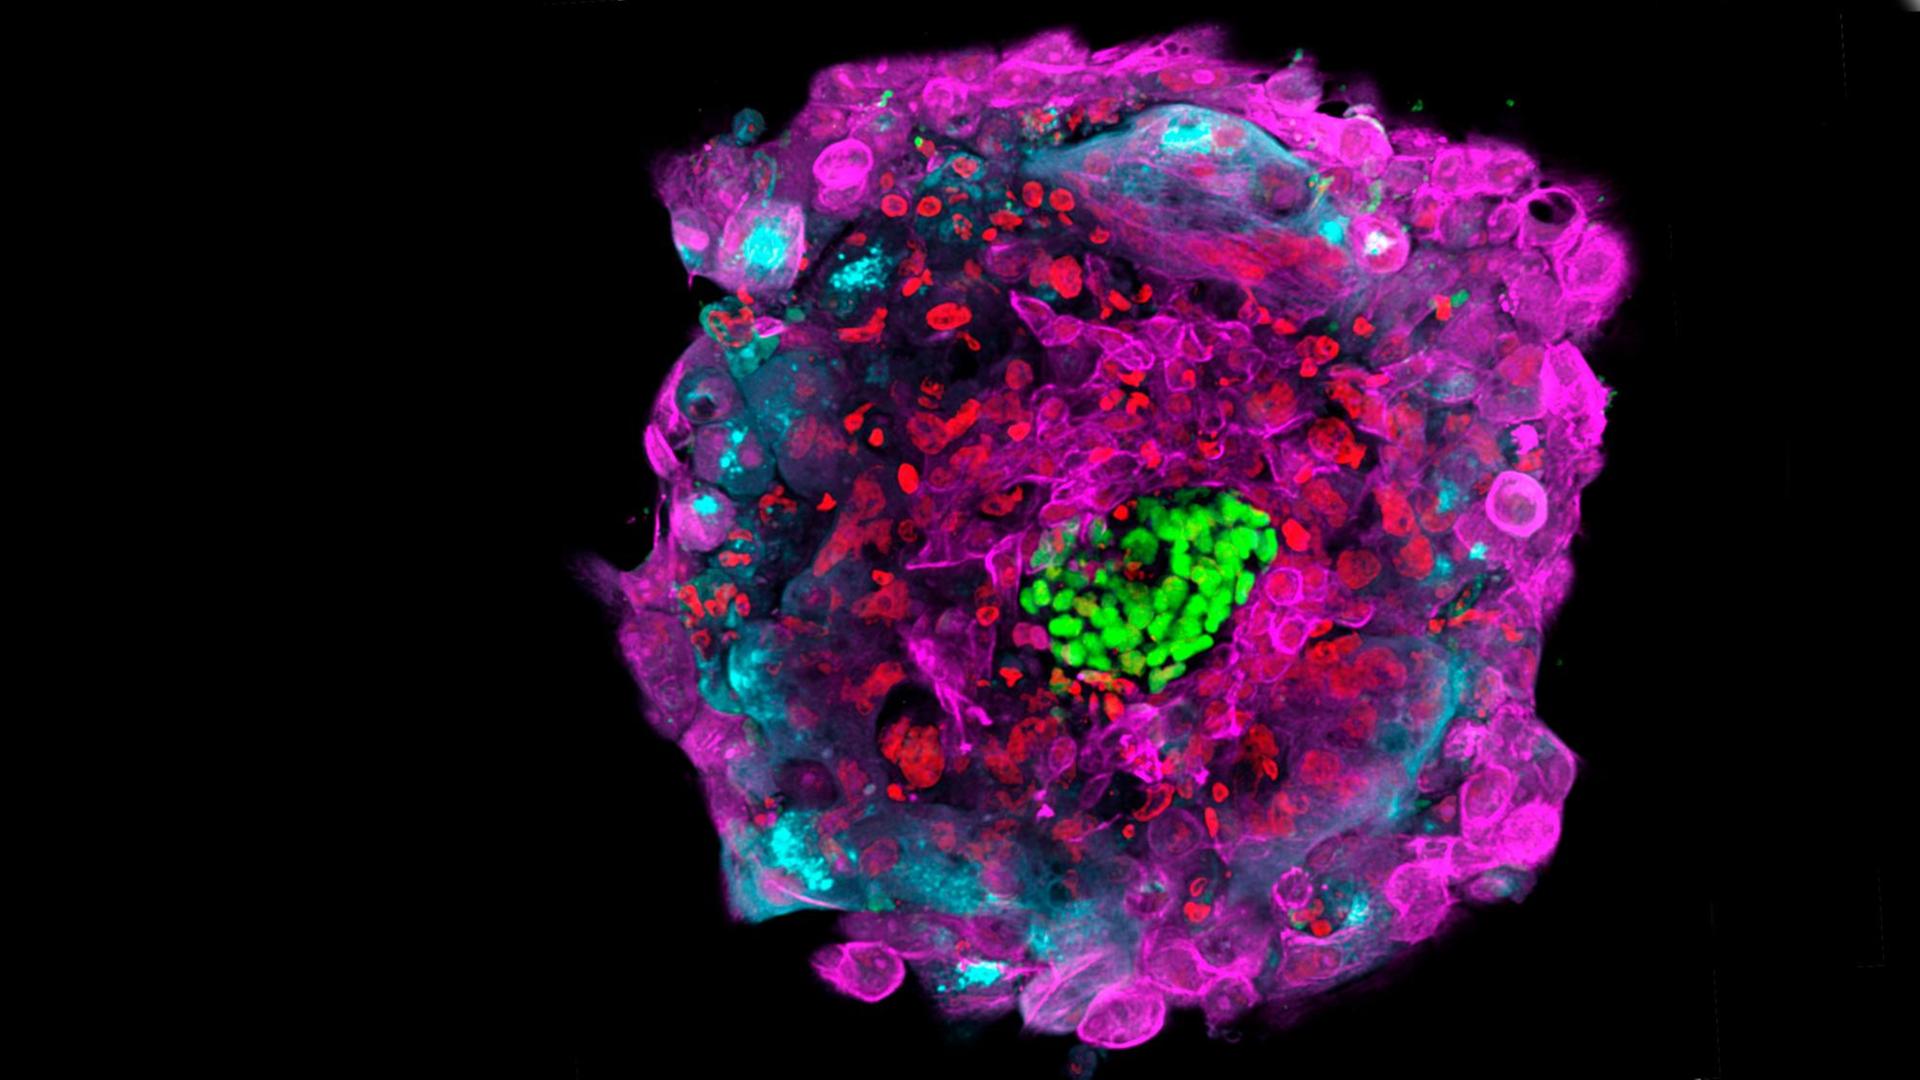 Diese von der Rockefeller University zur Verfügung gestellte Mikroskopaufnahme zeigt einen menschlichen Embryo 12 Tage nach der Befruchtung in vitro, wobei die verschiedenen Zelltypen durch unterschiedliche Farben markiert sind.